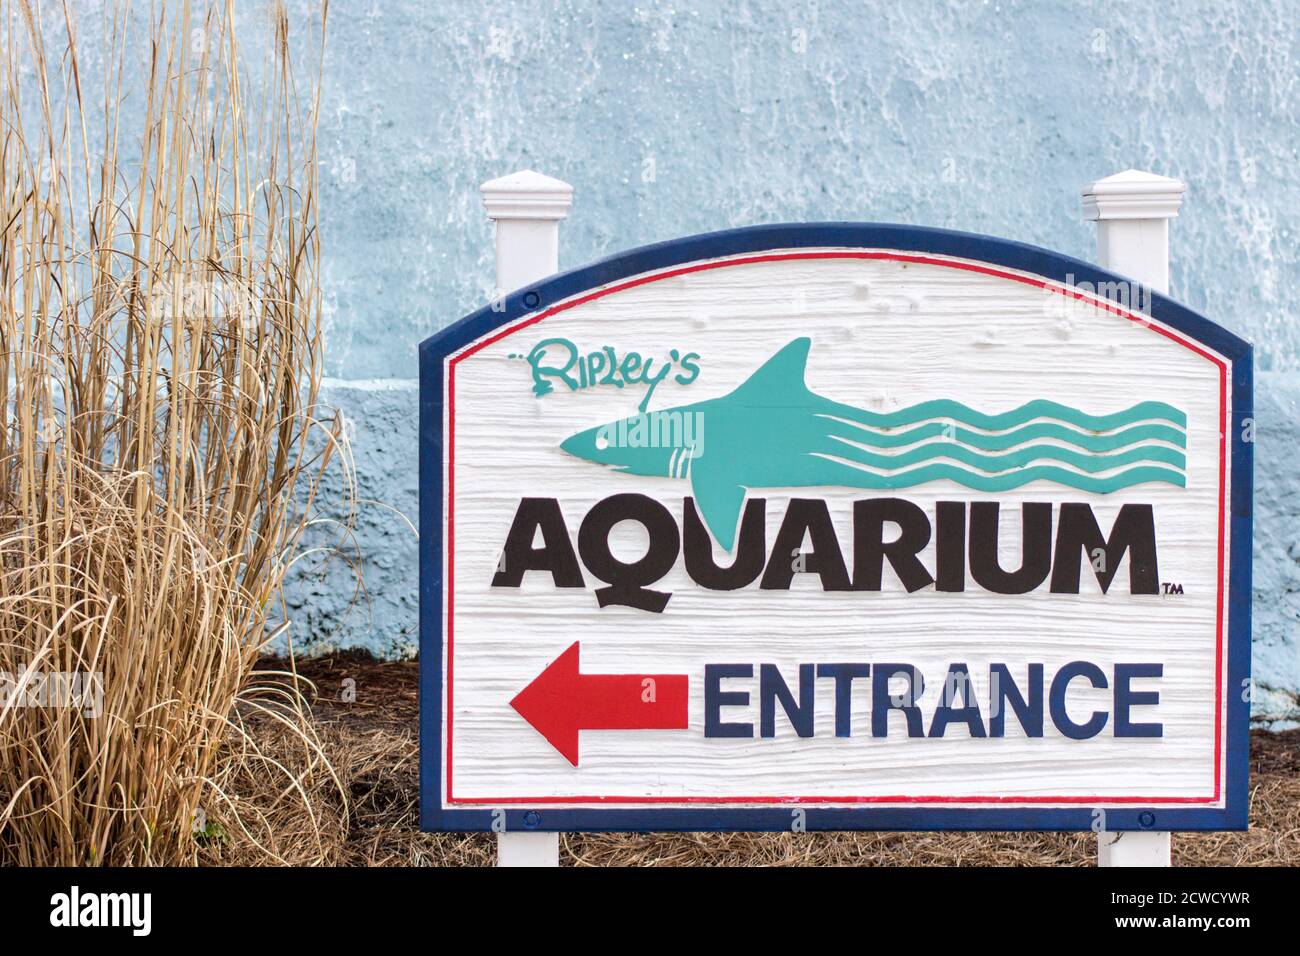 Il Ripley's Aquarium è una delle attrazioni turistiche più popolari della città e si trova presso il Broadway at the Beach Complex. Foto Stock